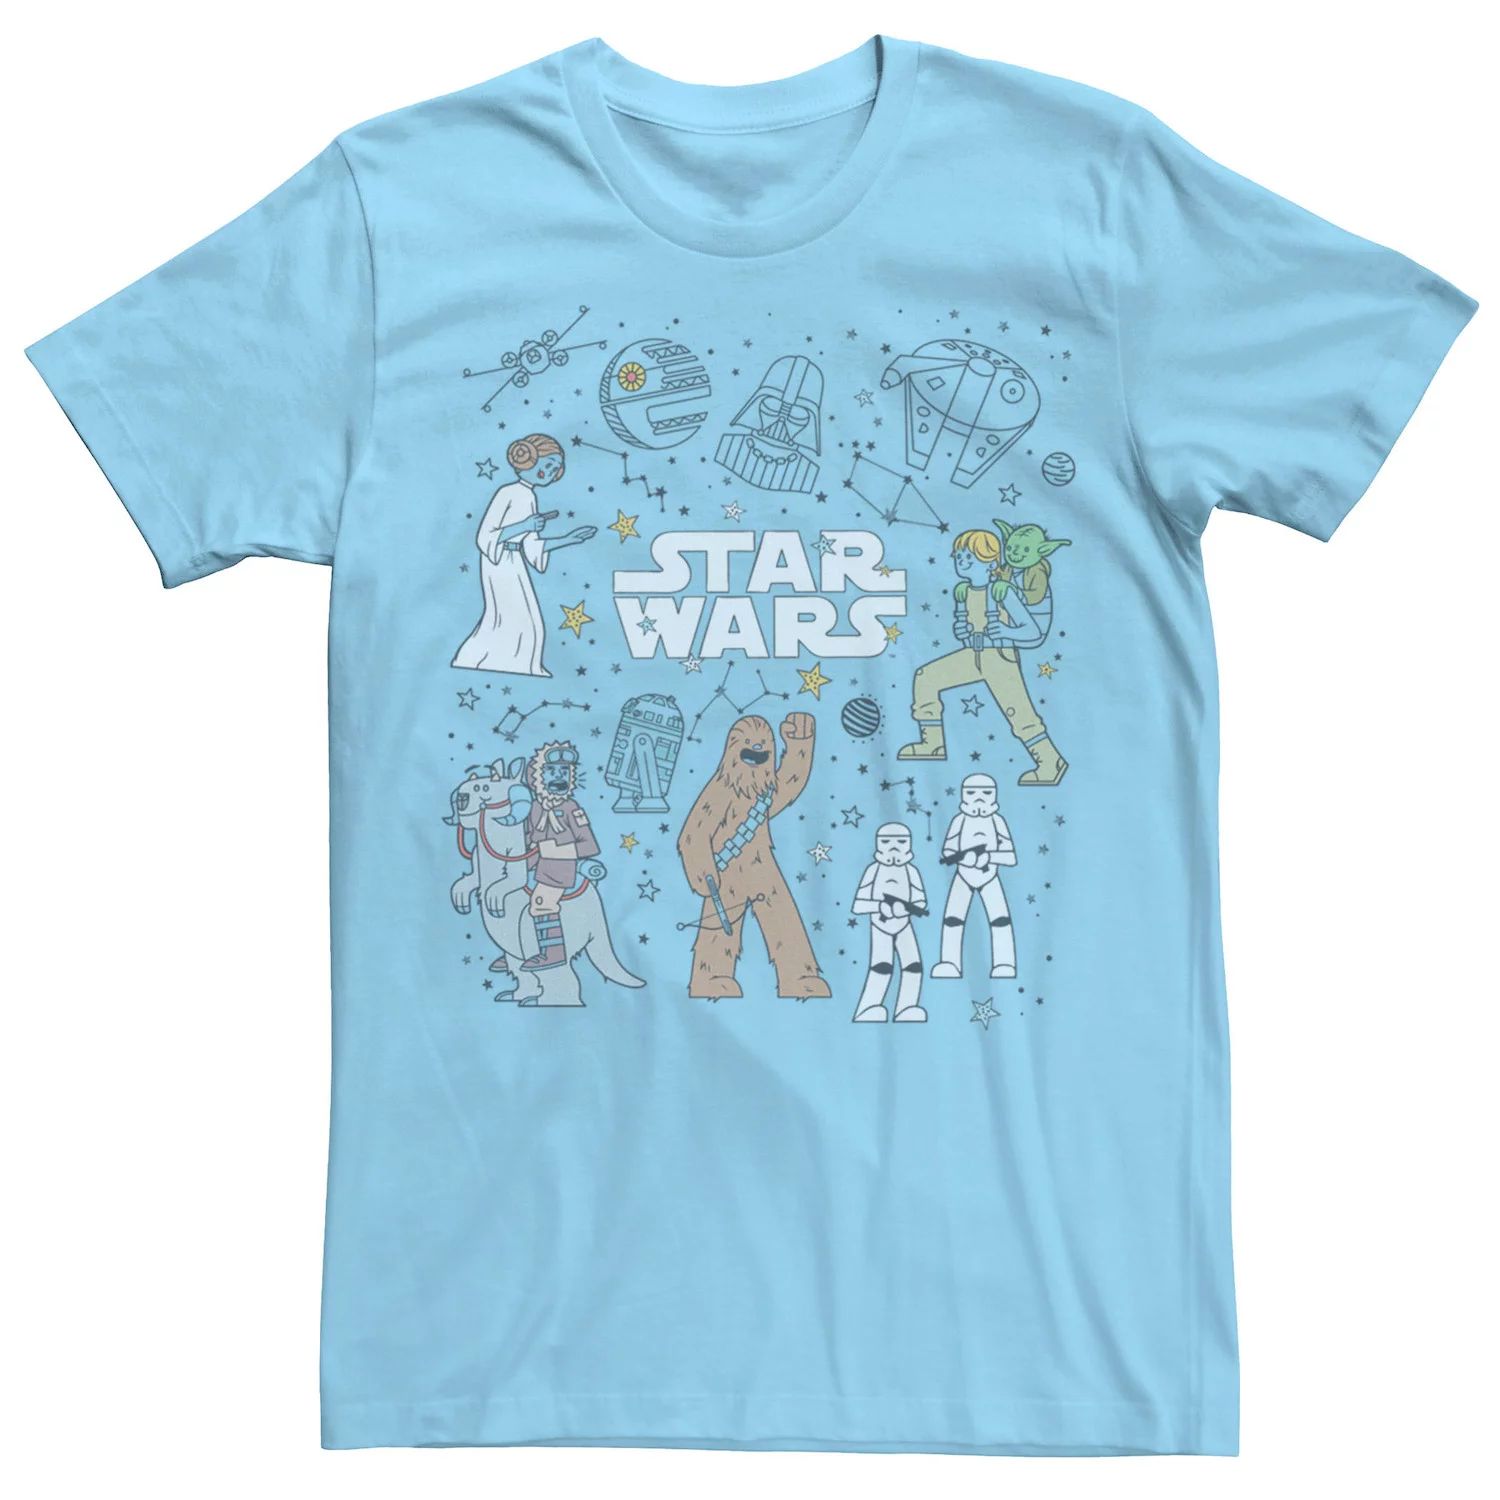 Мужская футболка с рисунками «Звездные войны» и «Созвездие» Star Wars, светло-синий